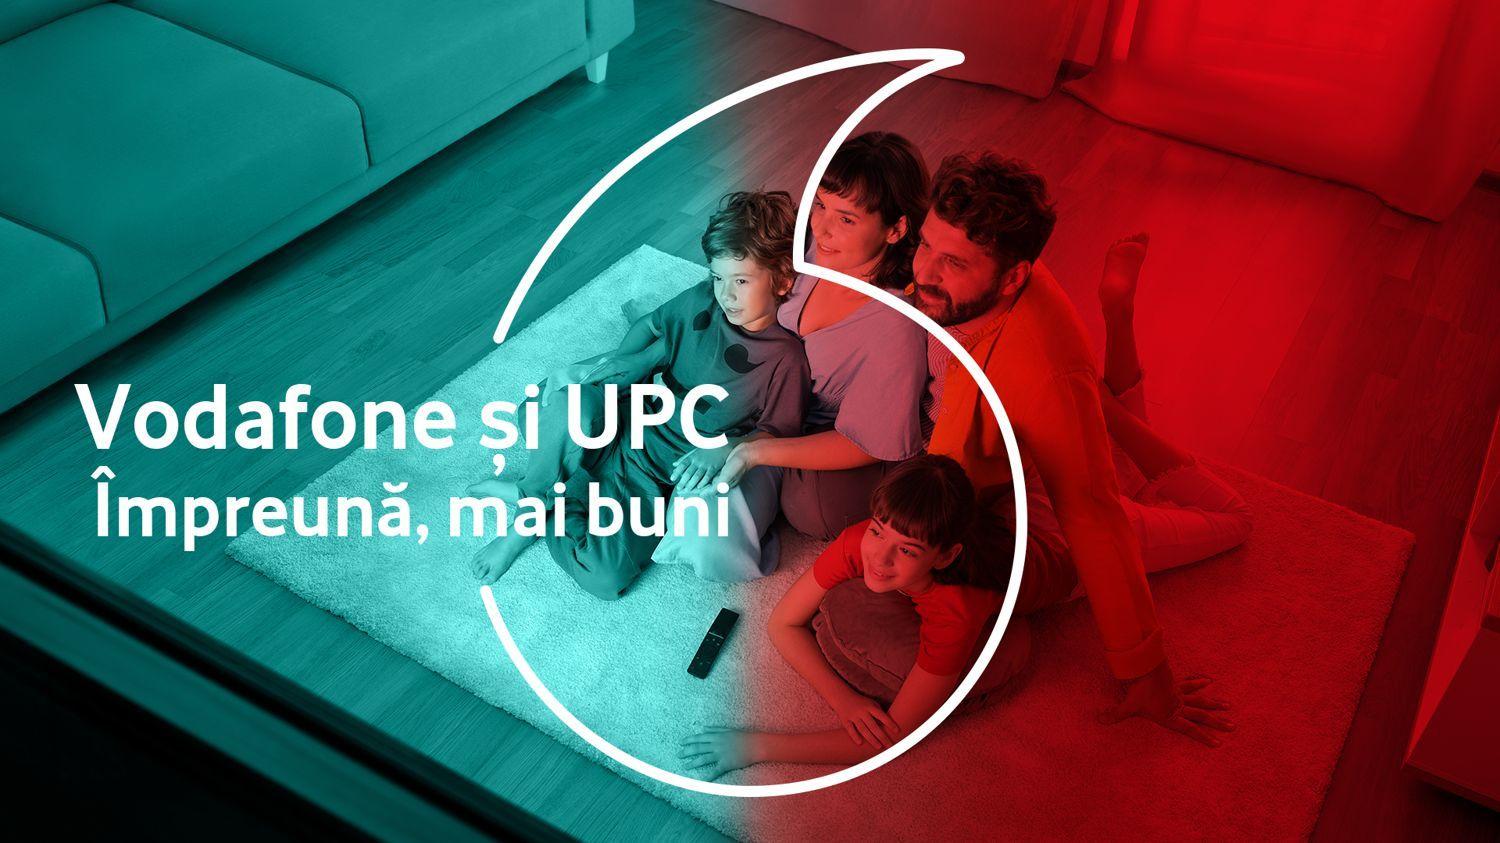 Vodafone începe integrarea UPC, care va dura trei ani, şi anunţă pachete pentru clienţii celor două companii